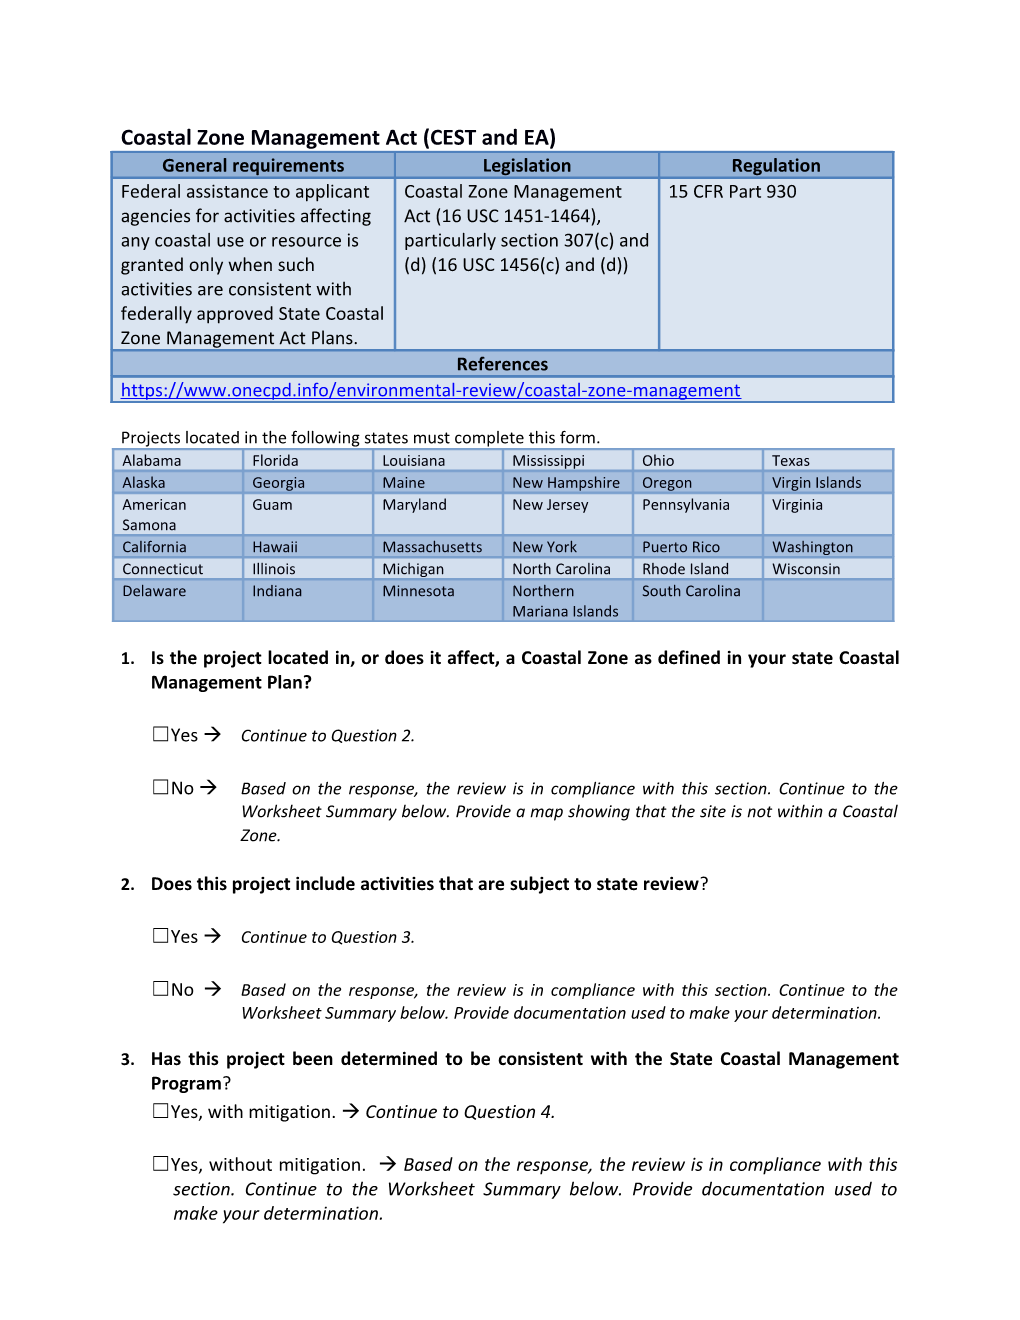 Coastal Zone Management - Worksheet